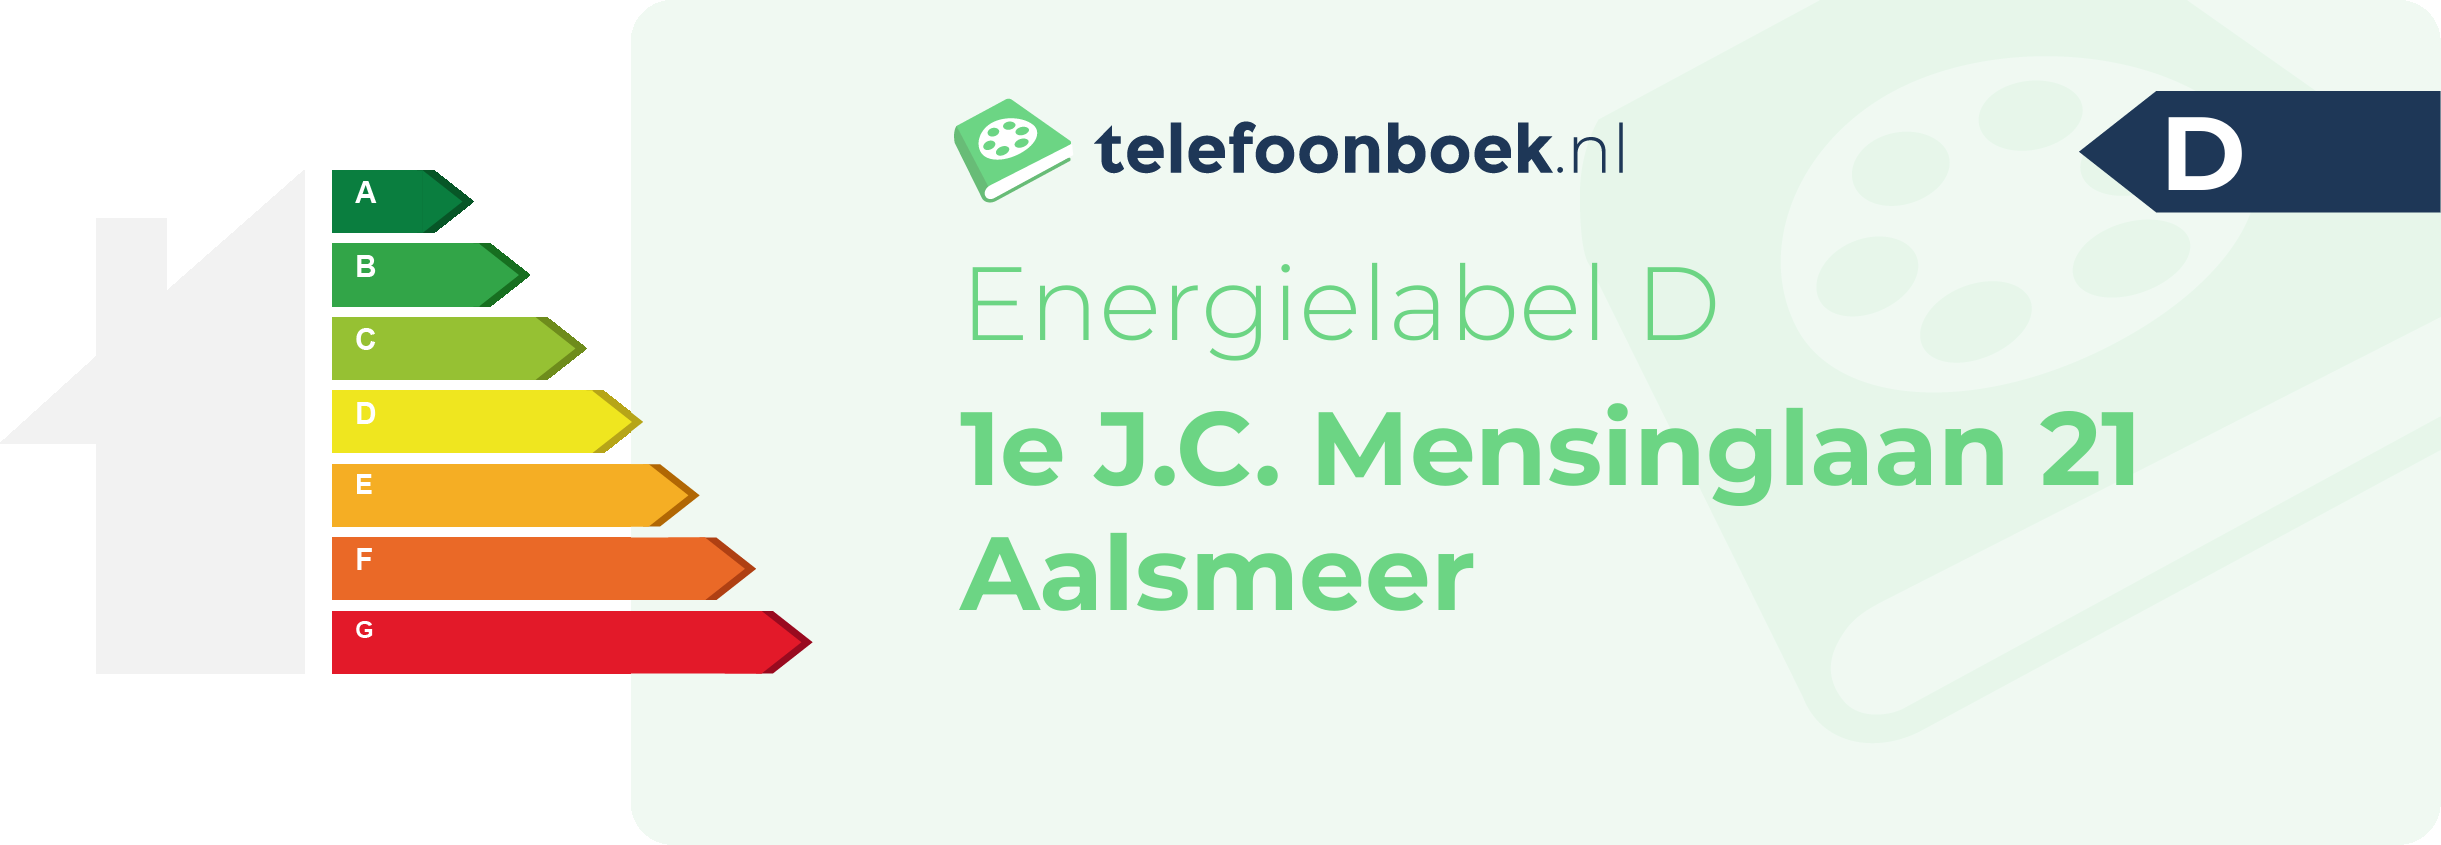 Energielabel 1e J.C. Mensinglaan 21 Aalsmeer